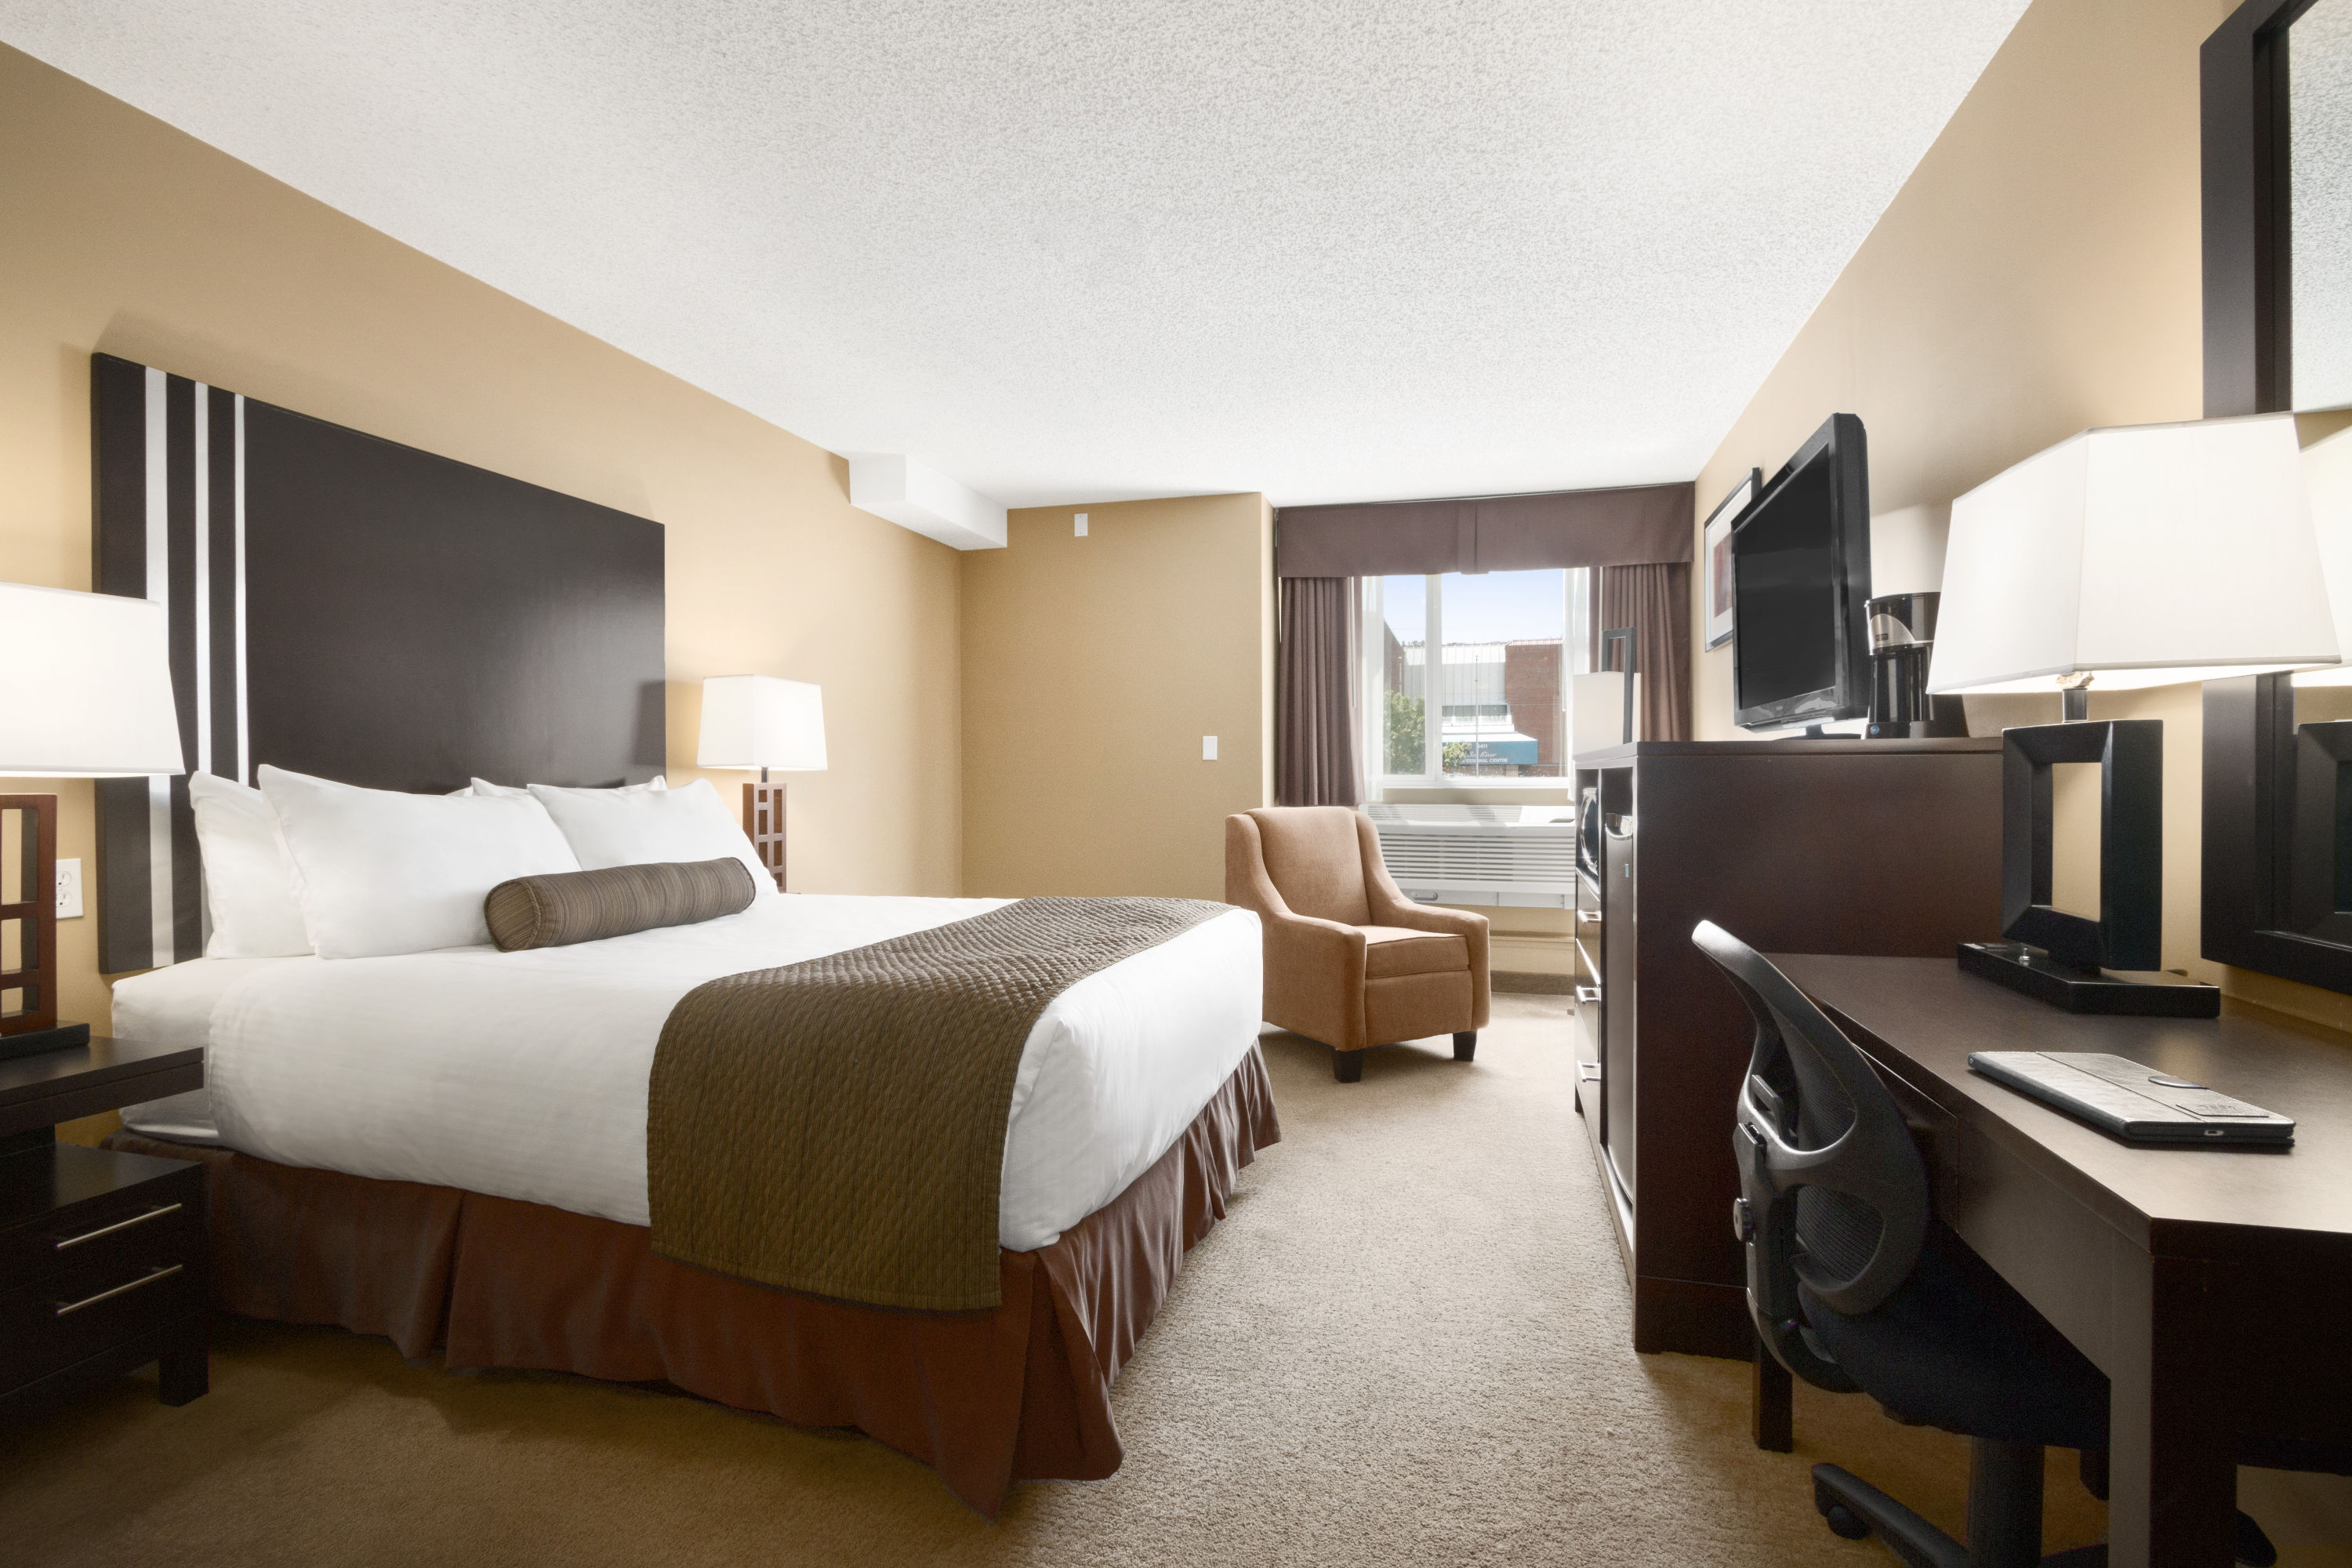 Days Inn by Wyndham Calgary Northwest | Calgary, AB Hotels